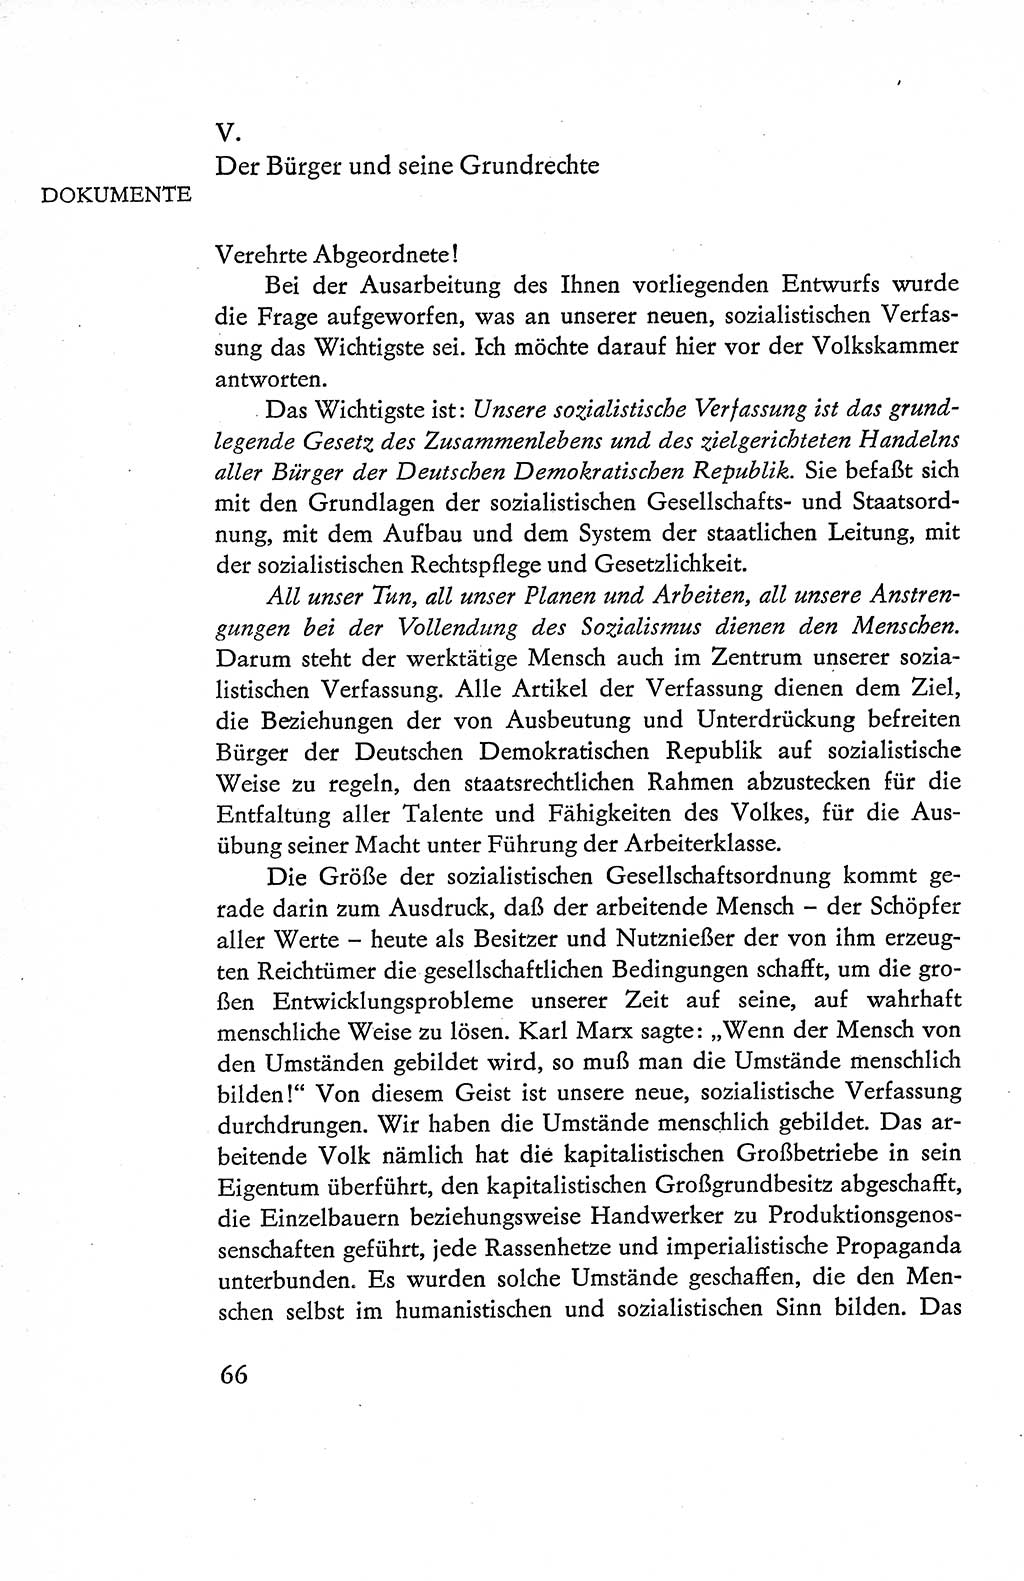 Verfassung der Deutschen Demokratischen Republik (DDR), Dokumente, Kommentar 1969, Band 1, Seite 66 (Verf. DDR Dok. Komm. 1969, Bd. 1, S. 66)